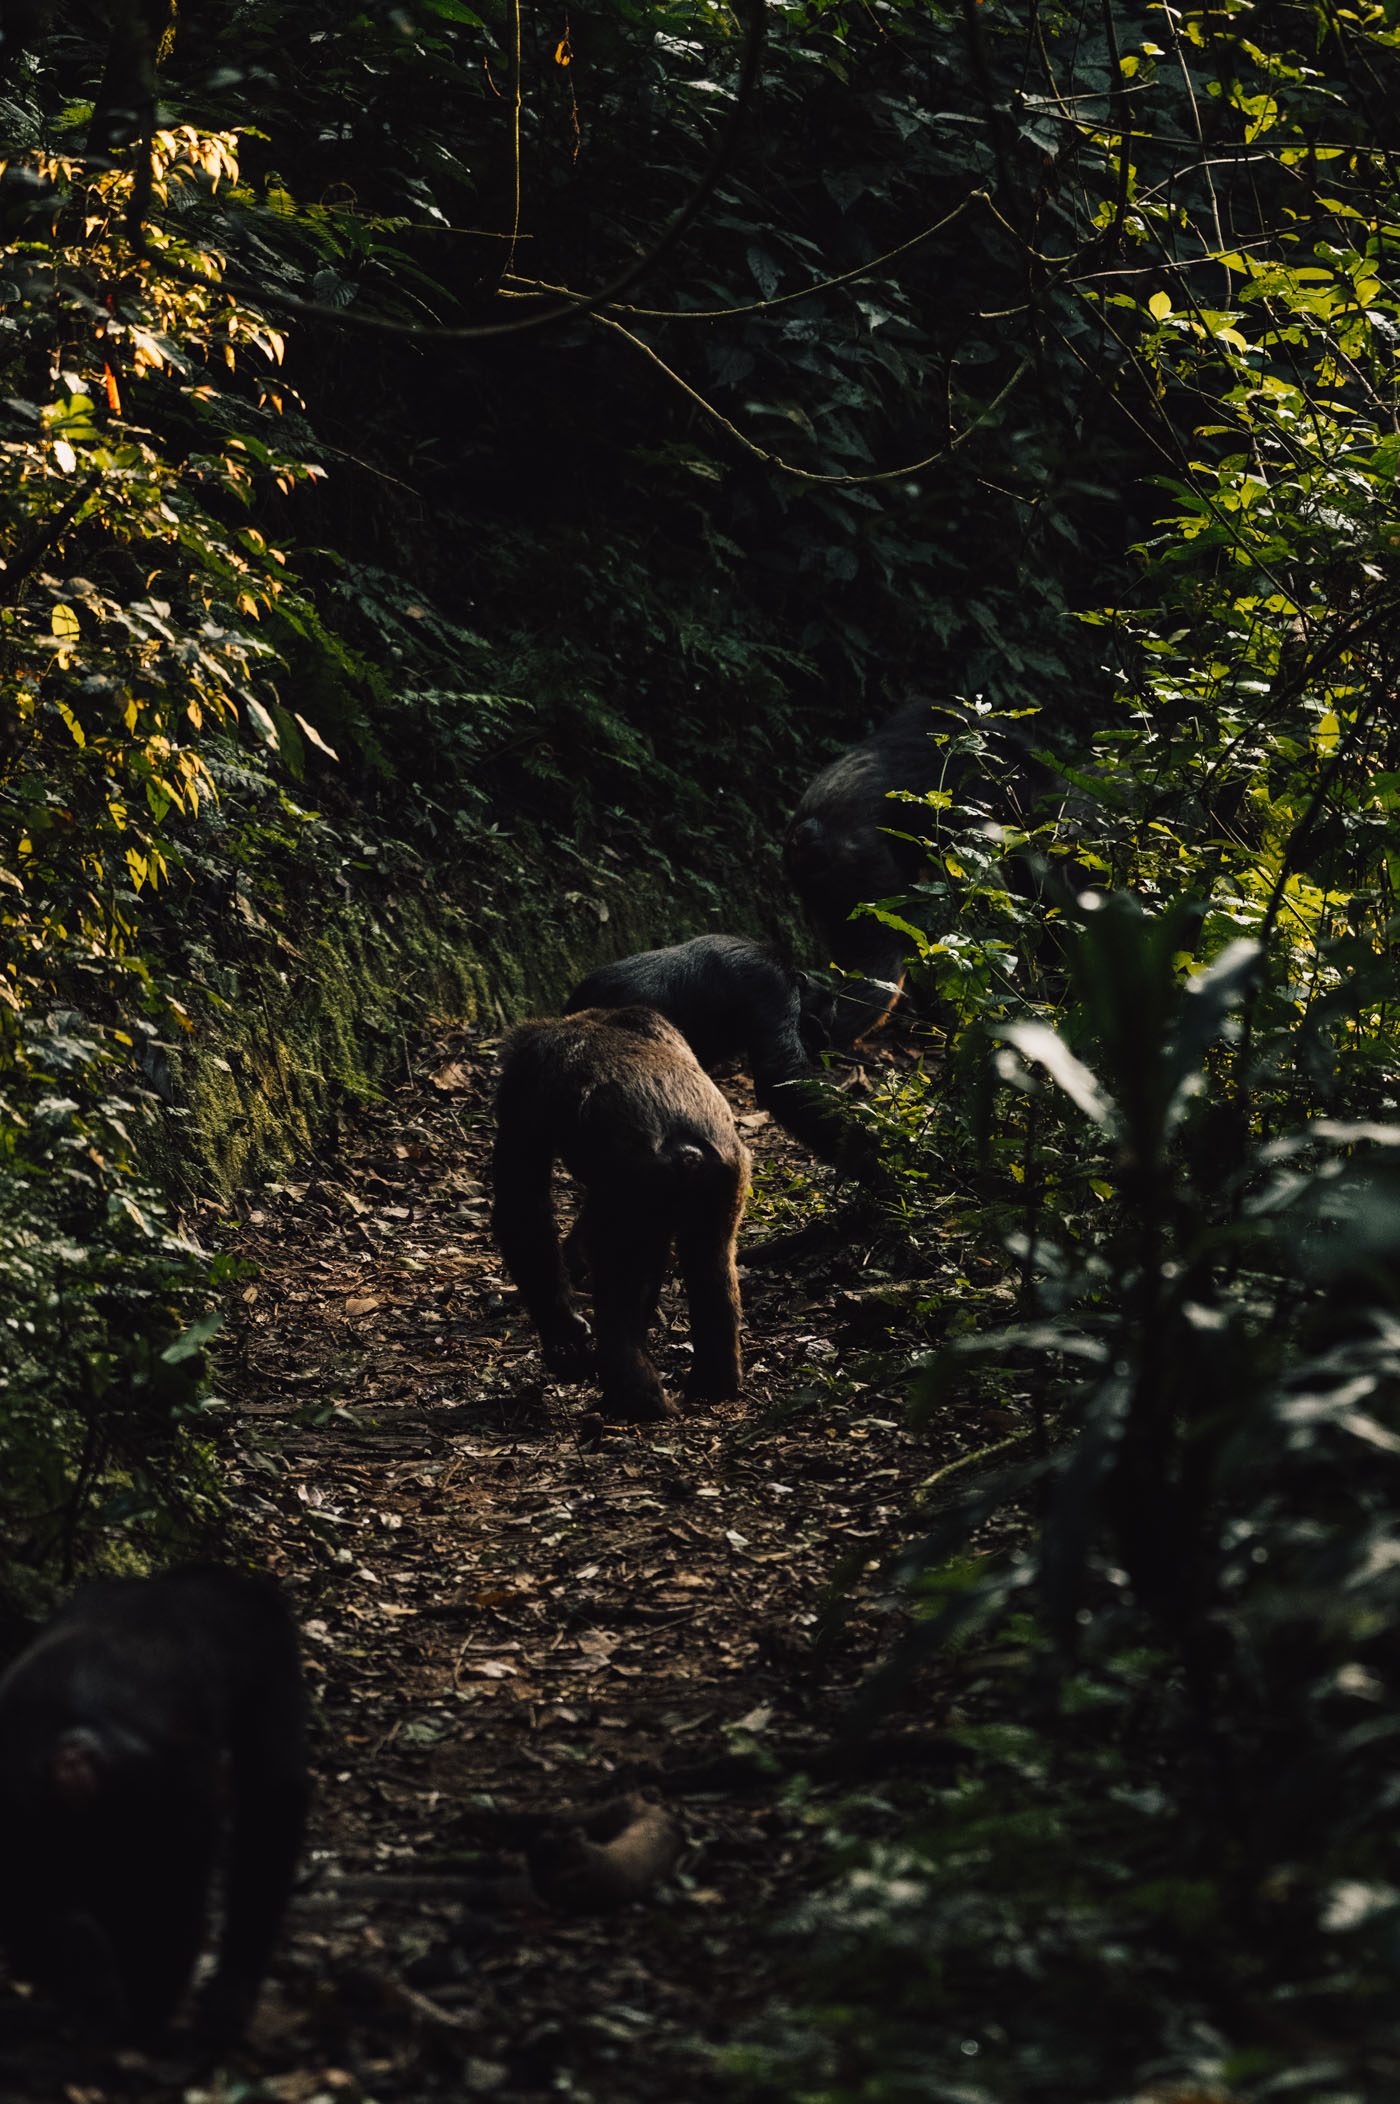 Trekking in Nyungwe National Park in Rwanda